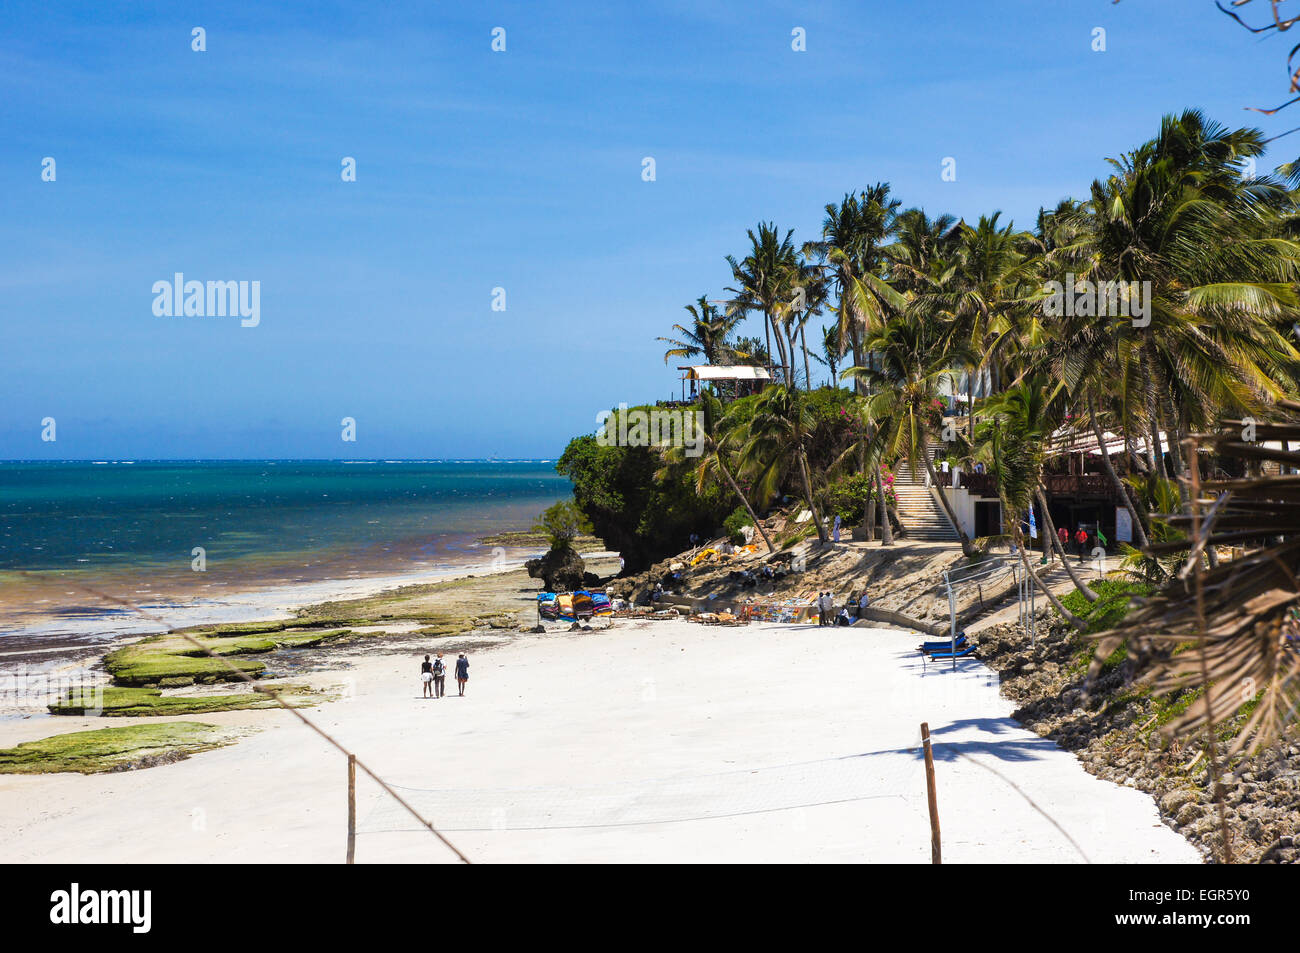 Plage de sable blanc de la côte nord de Mombasa Beach, Mombasa, Kenya, Africa Banque D'Images